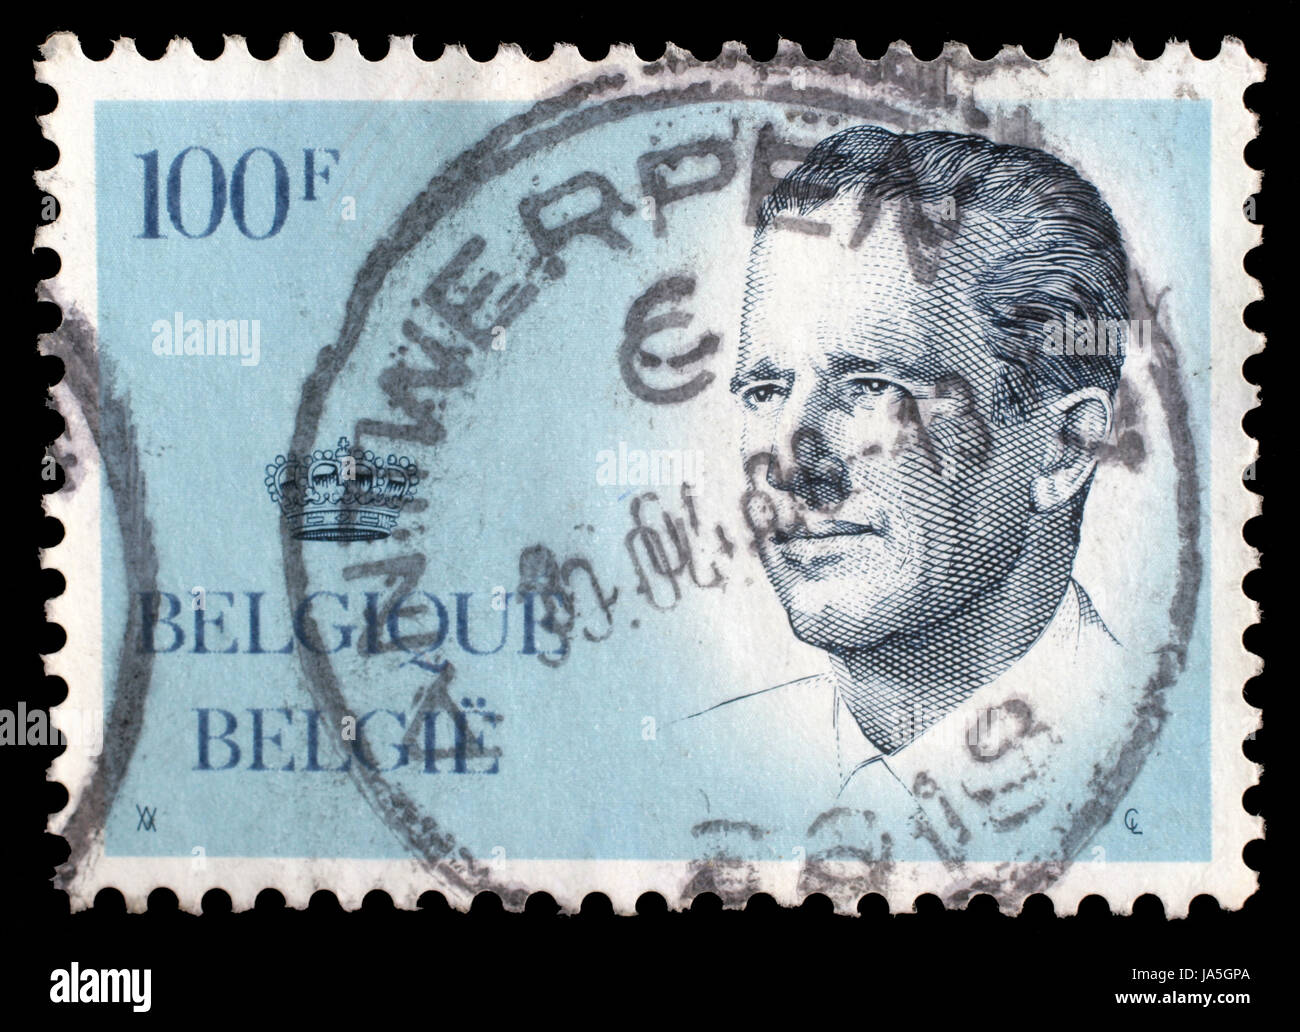 Belgique - Vers les années 1970 : un timbre imprimé en Belgique montre libre portrait Albert II est l'actuel Roi des Belges et d'un monarque constitutionnel, vers les années 1970 Banque D'Images